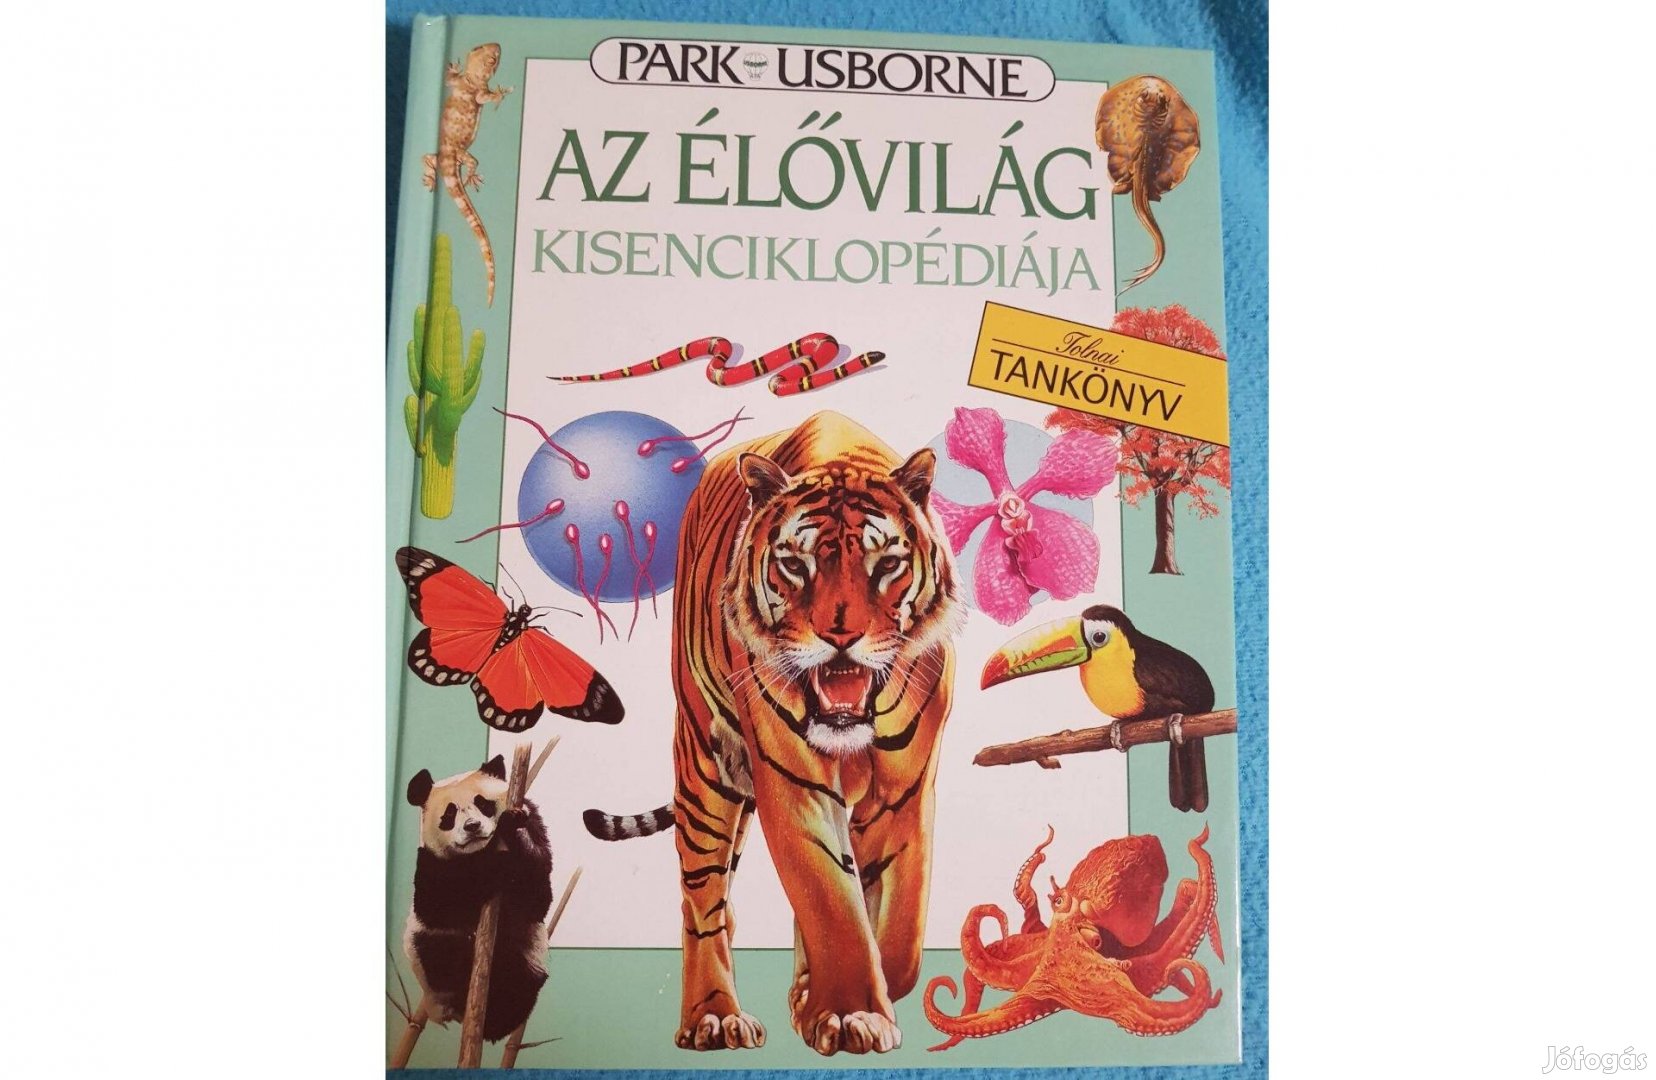 Az élővilág kisenciklopédiája - Park - Usborne